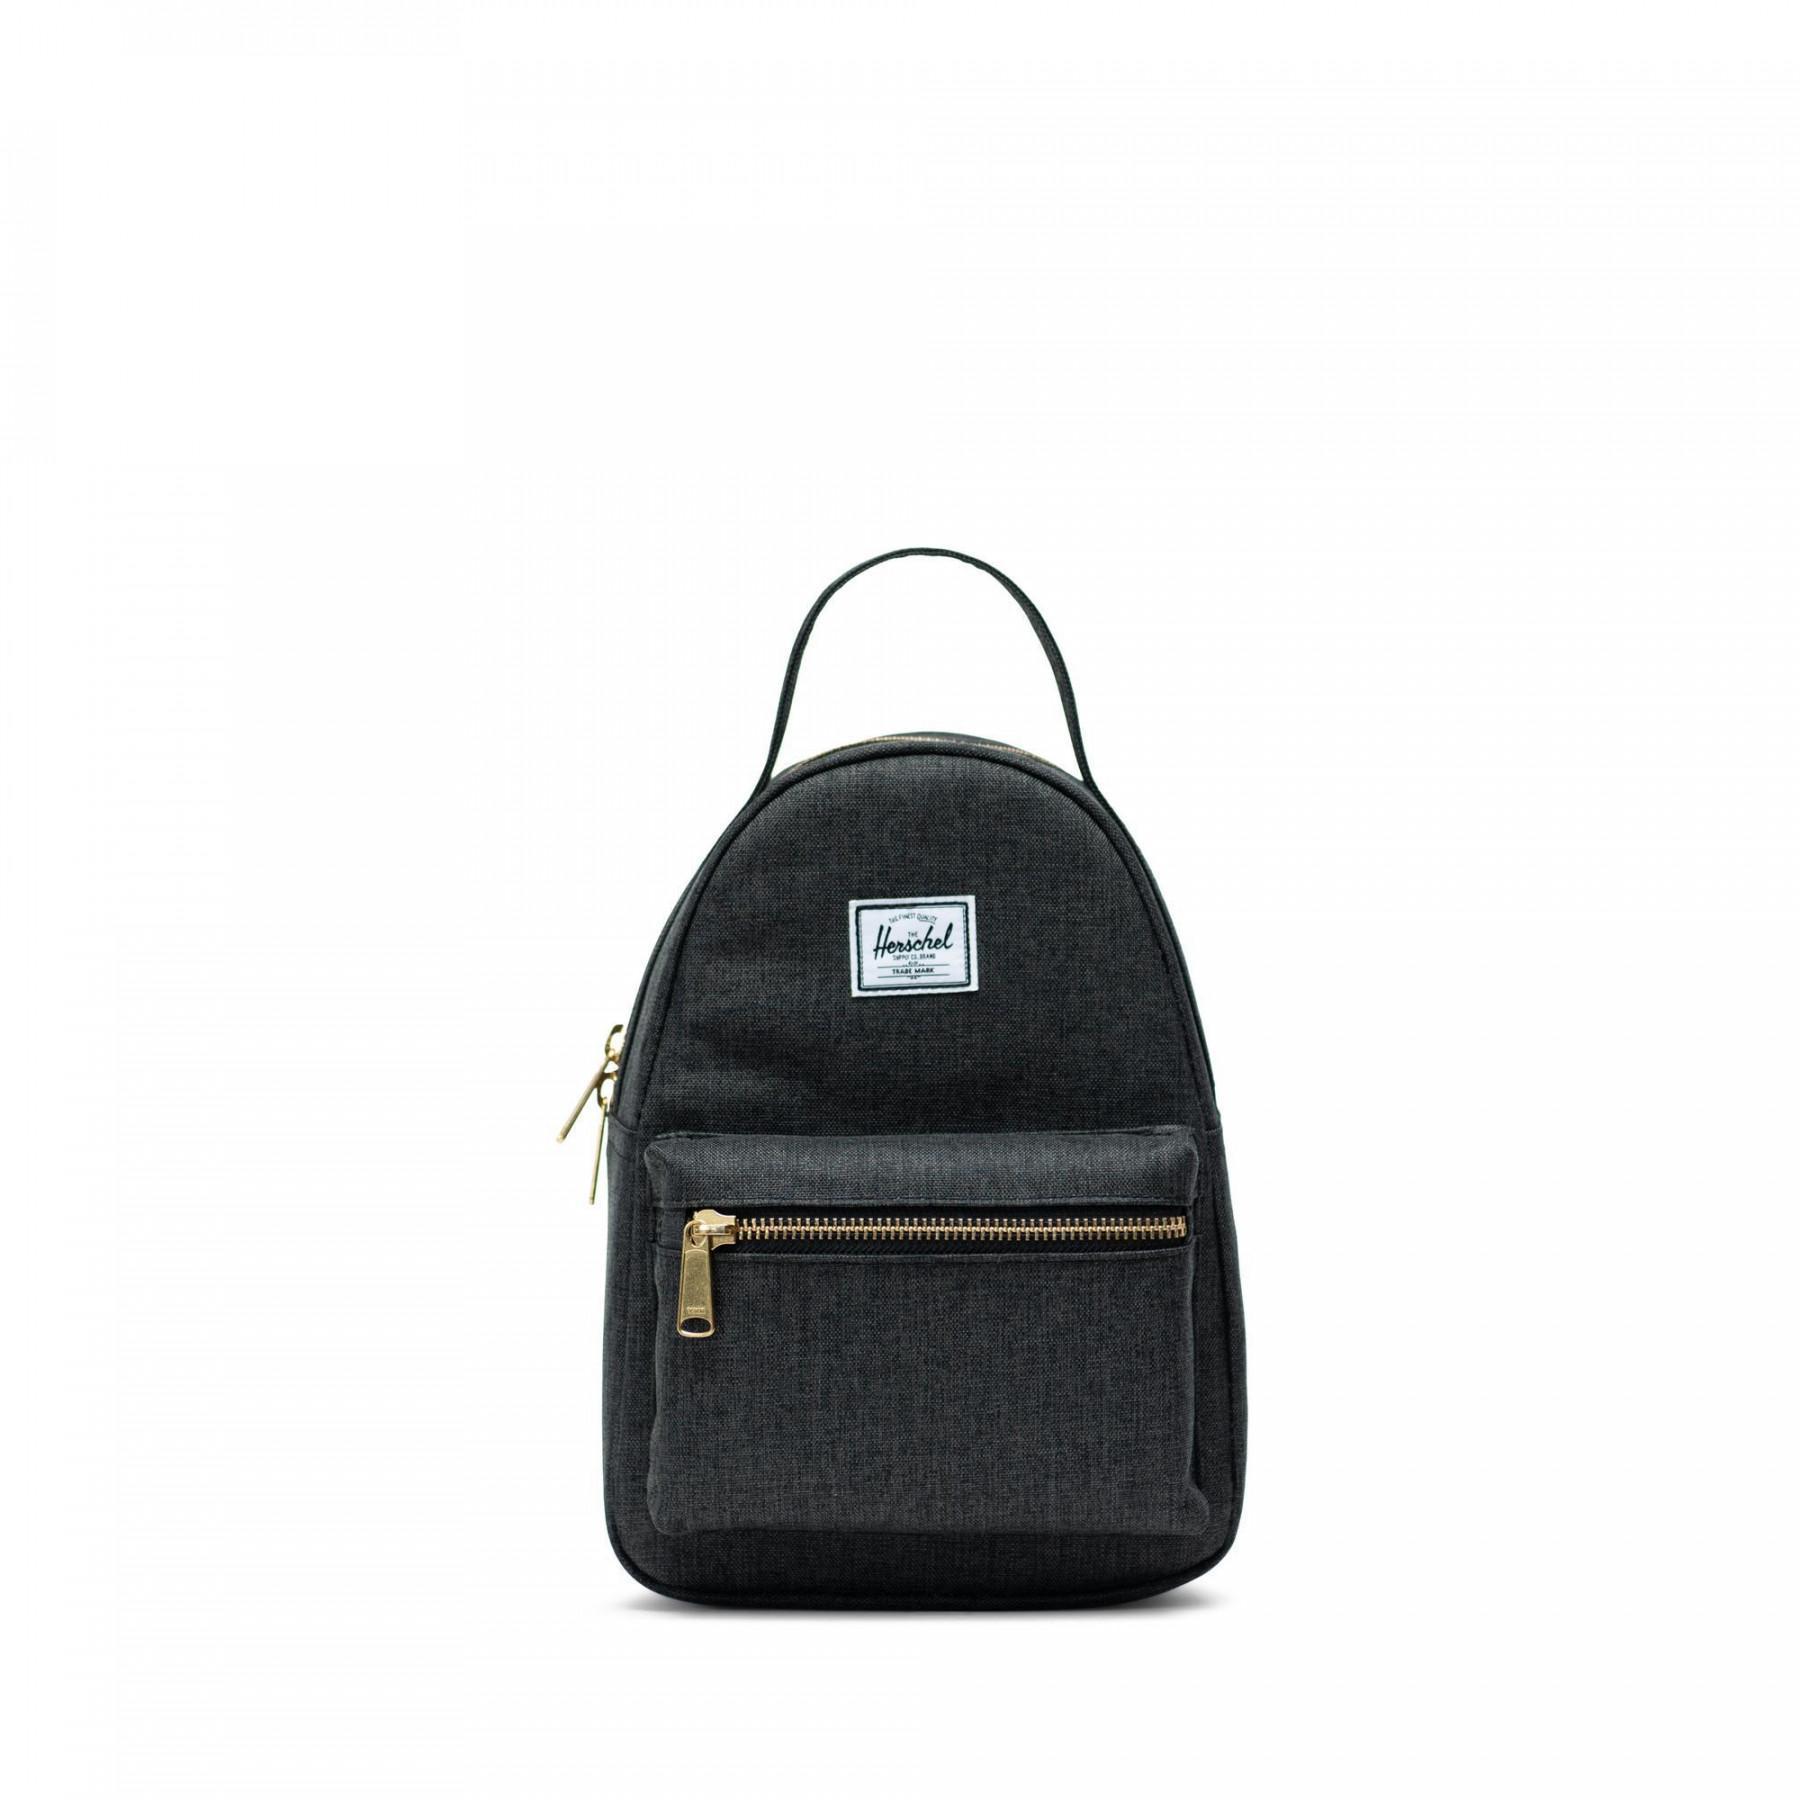 Backpack Herschel nova mini black crosshatch